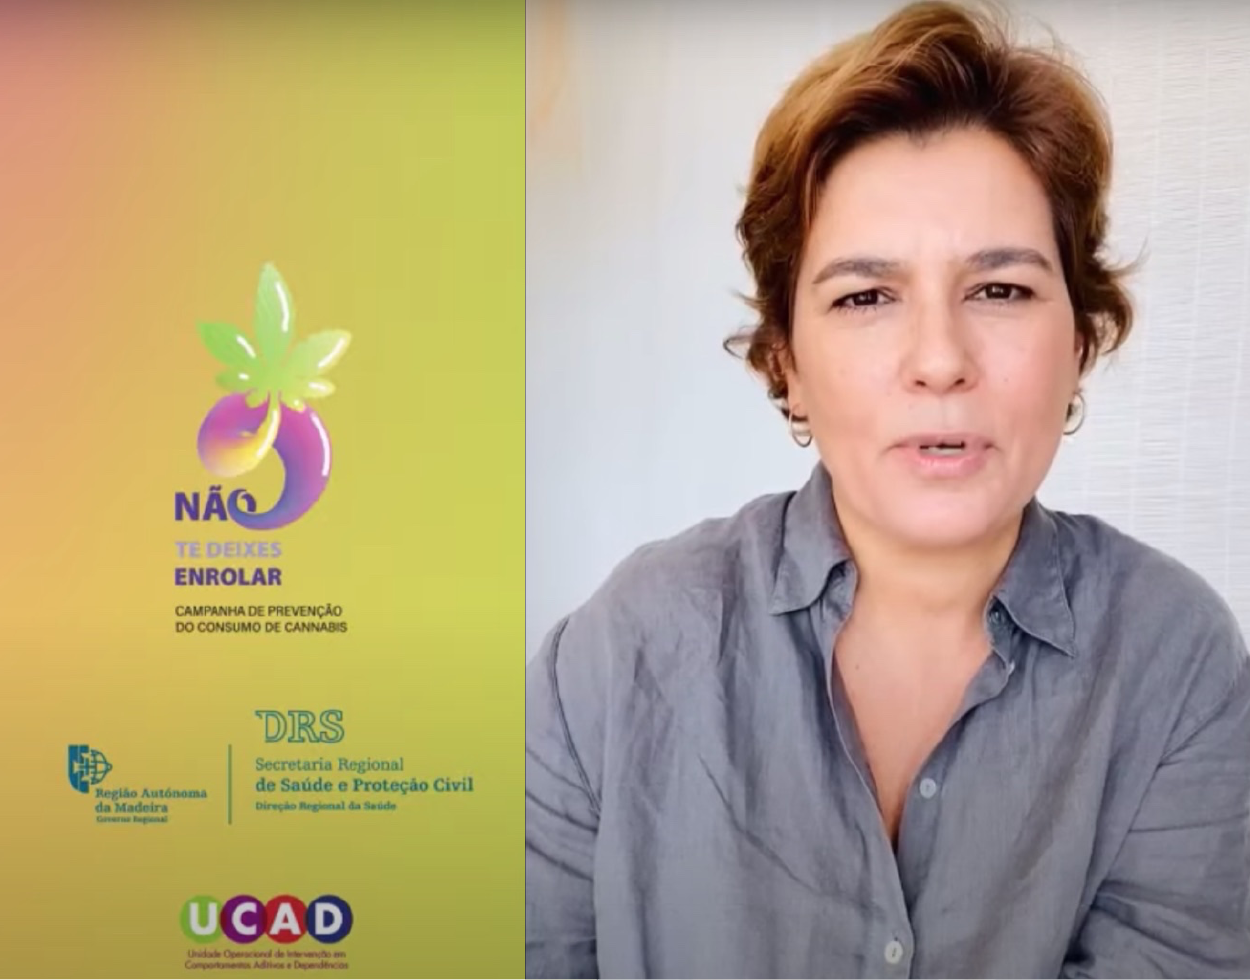 Sara Reis Gomes deixa mensagem de prevenção aos jovens sobre o consumo de canábis